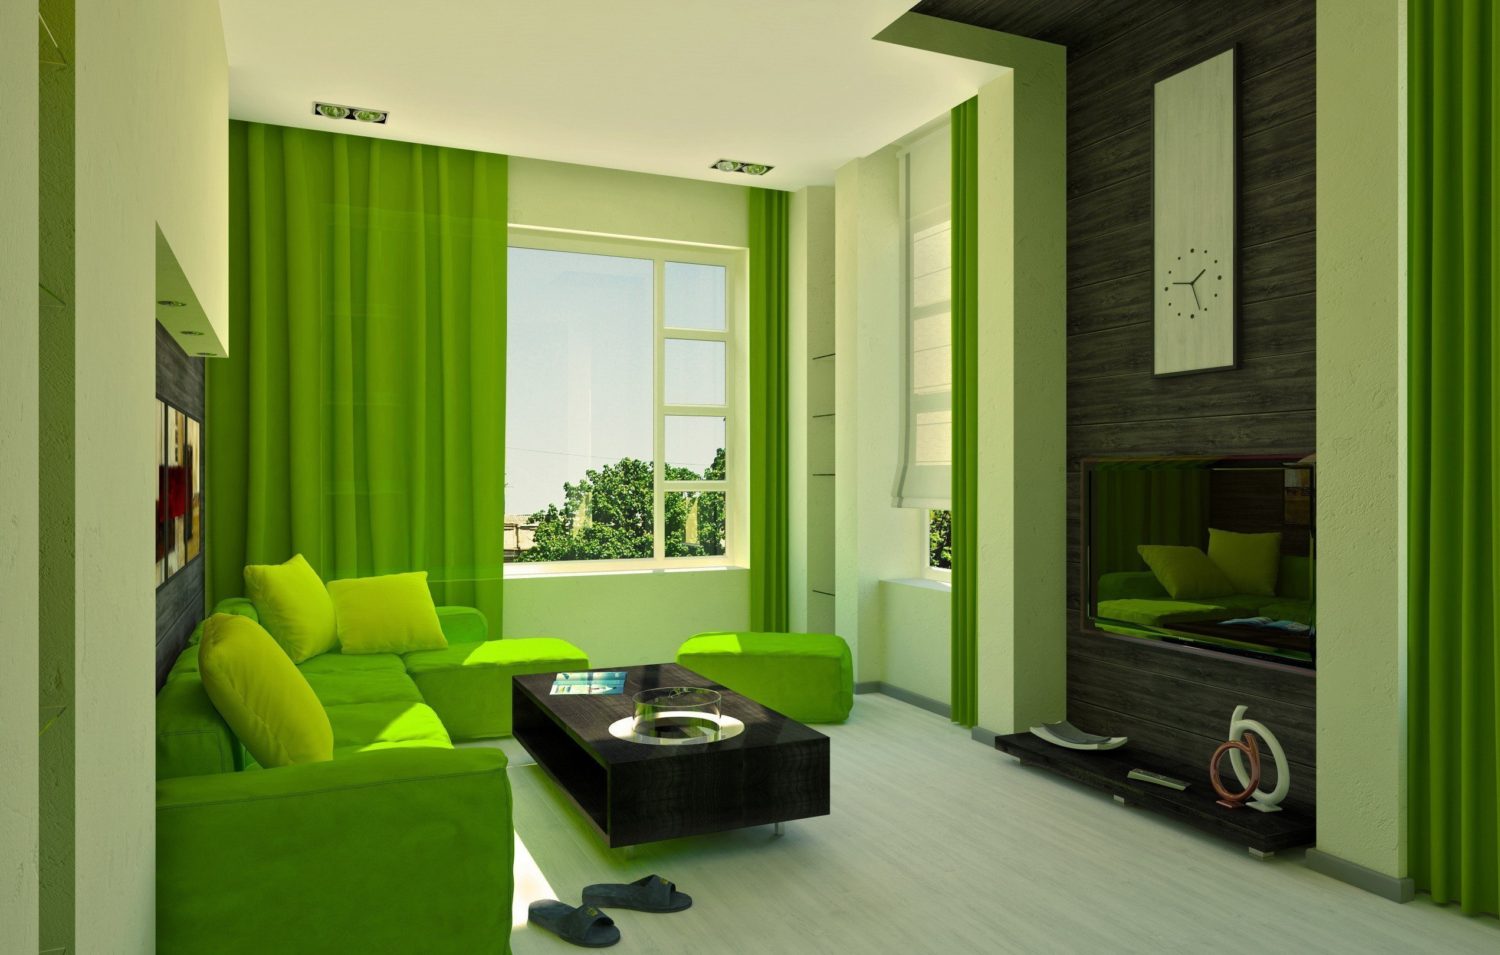 sala de estar em verde interior foto